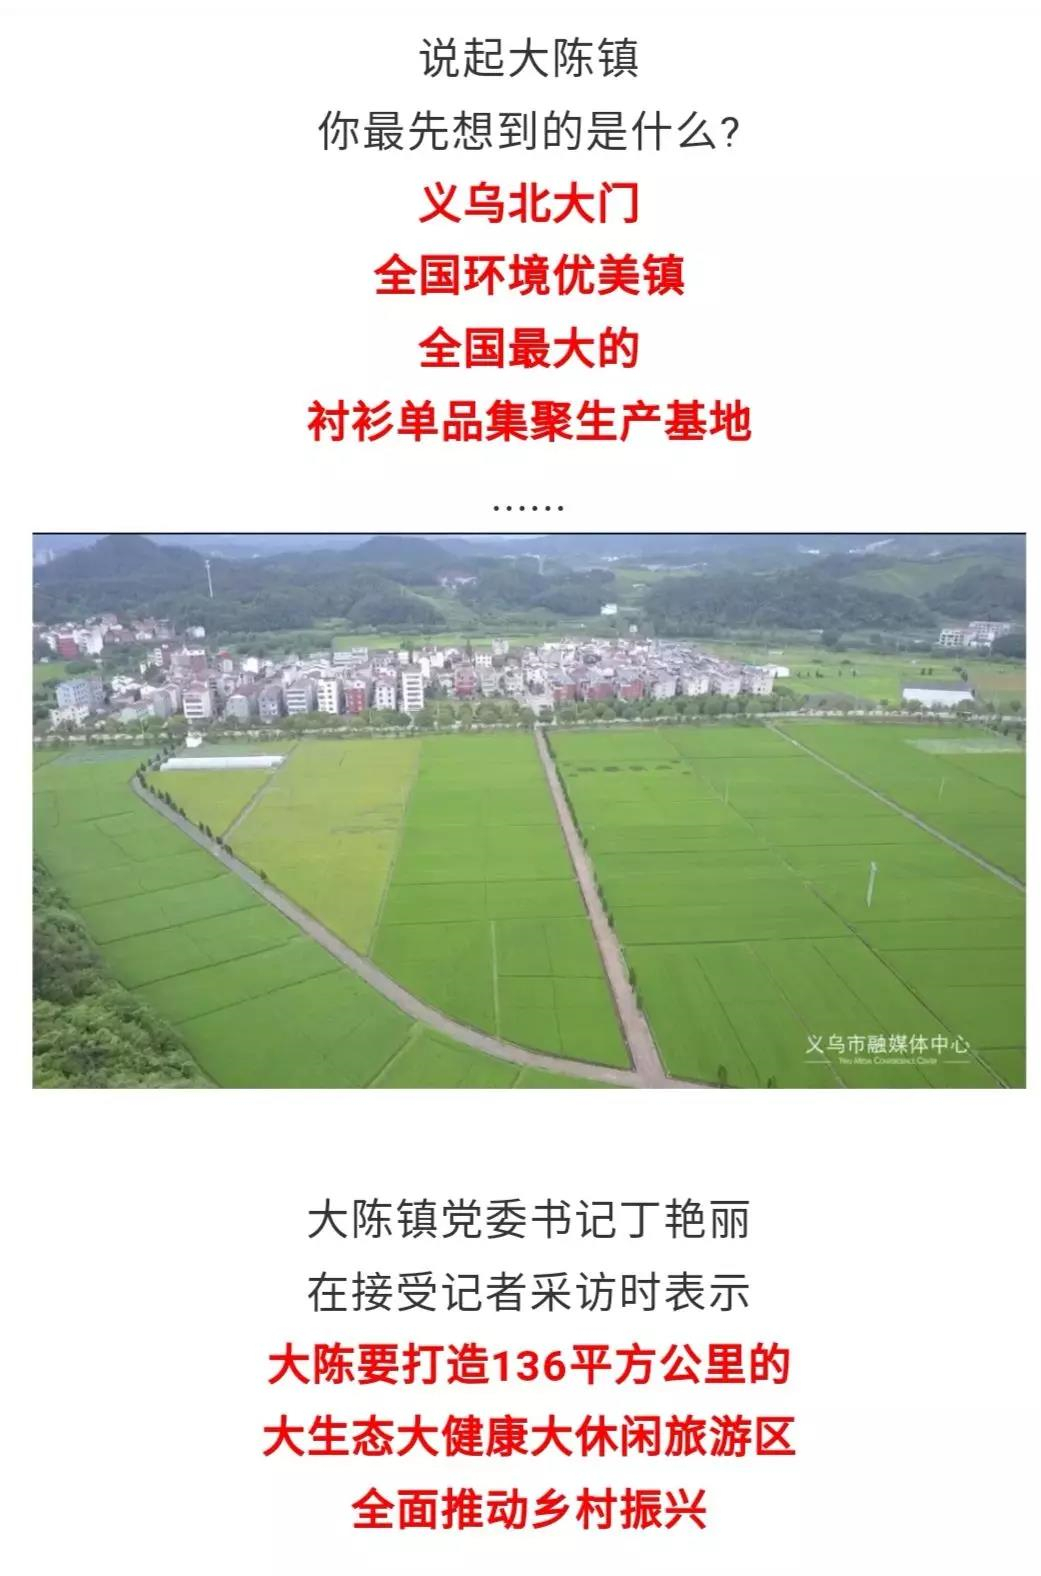 大动作！4个亿元项目马上落户，义乌“北大门”将建5个特色村